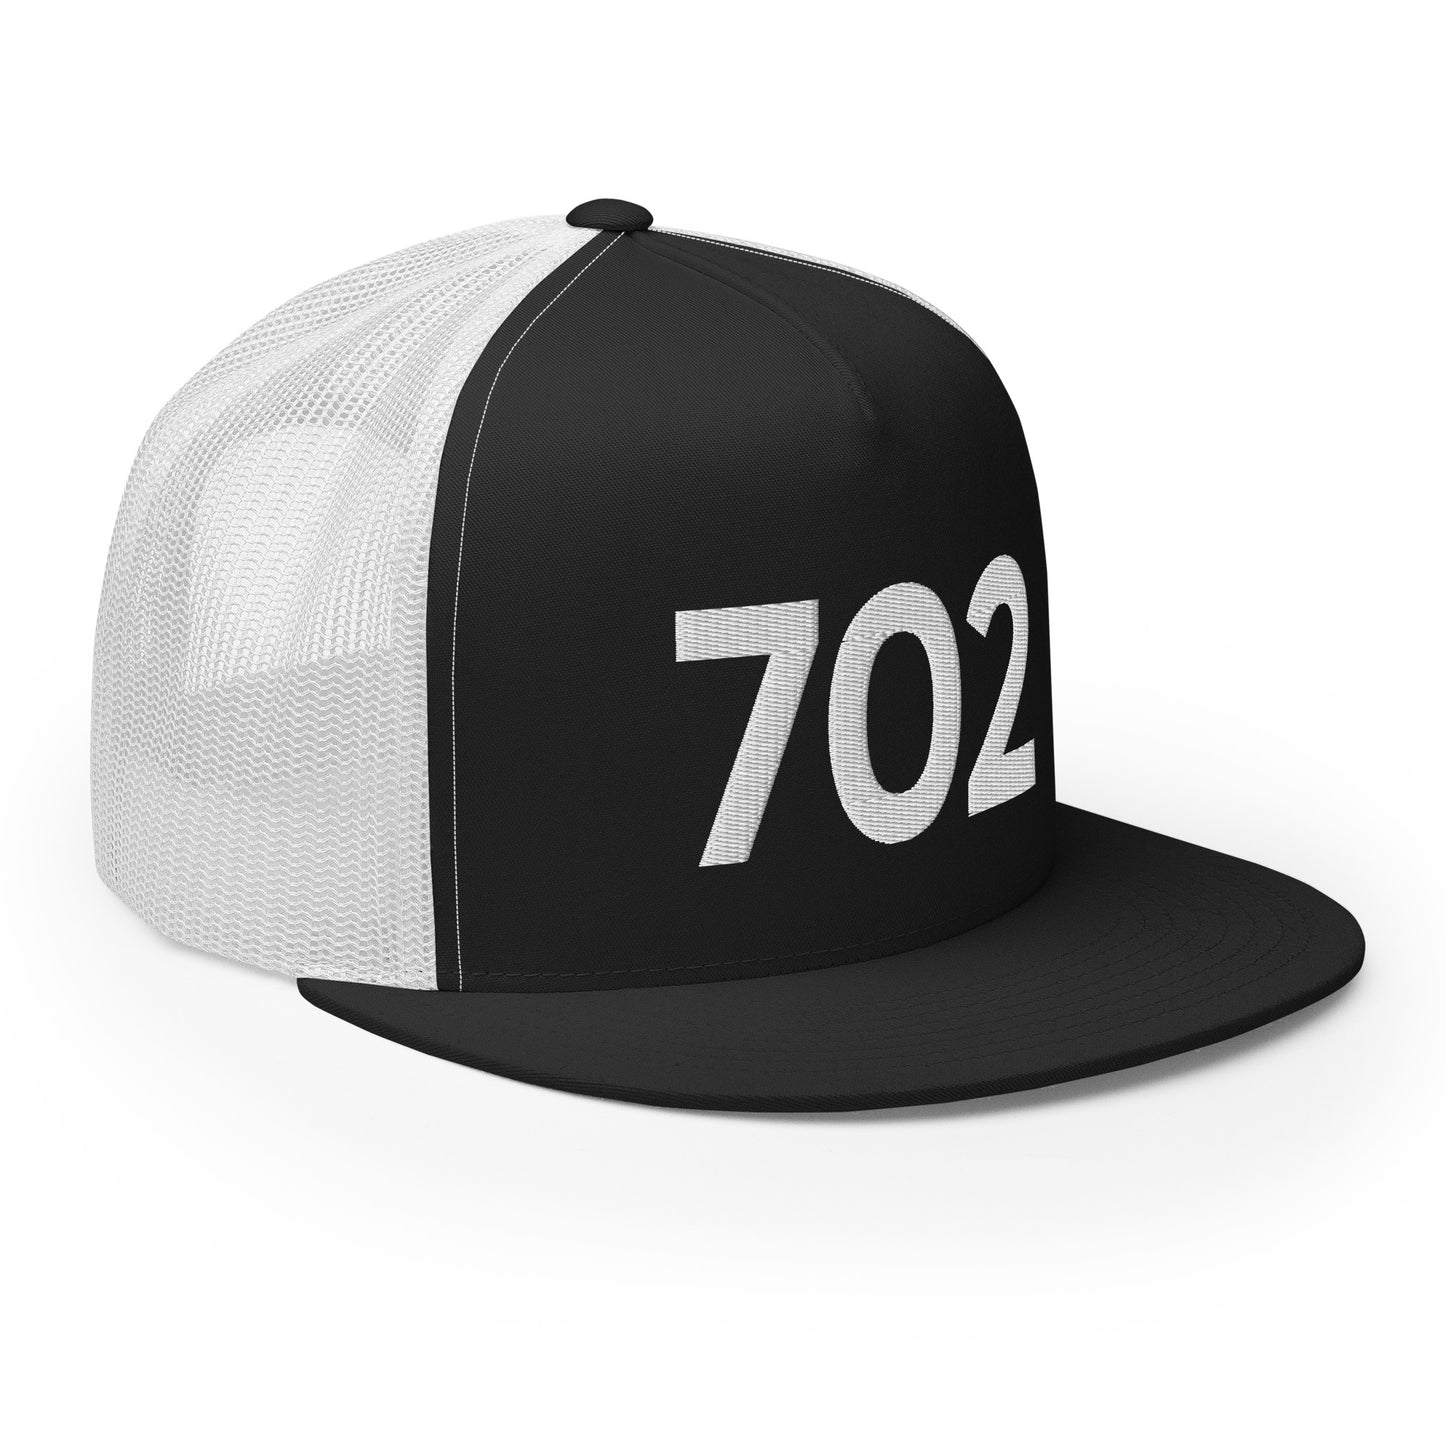 702 Las Vegas Trucker Hat